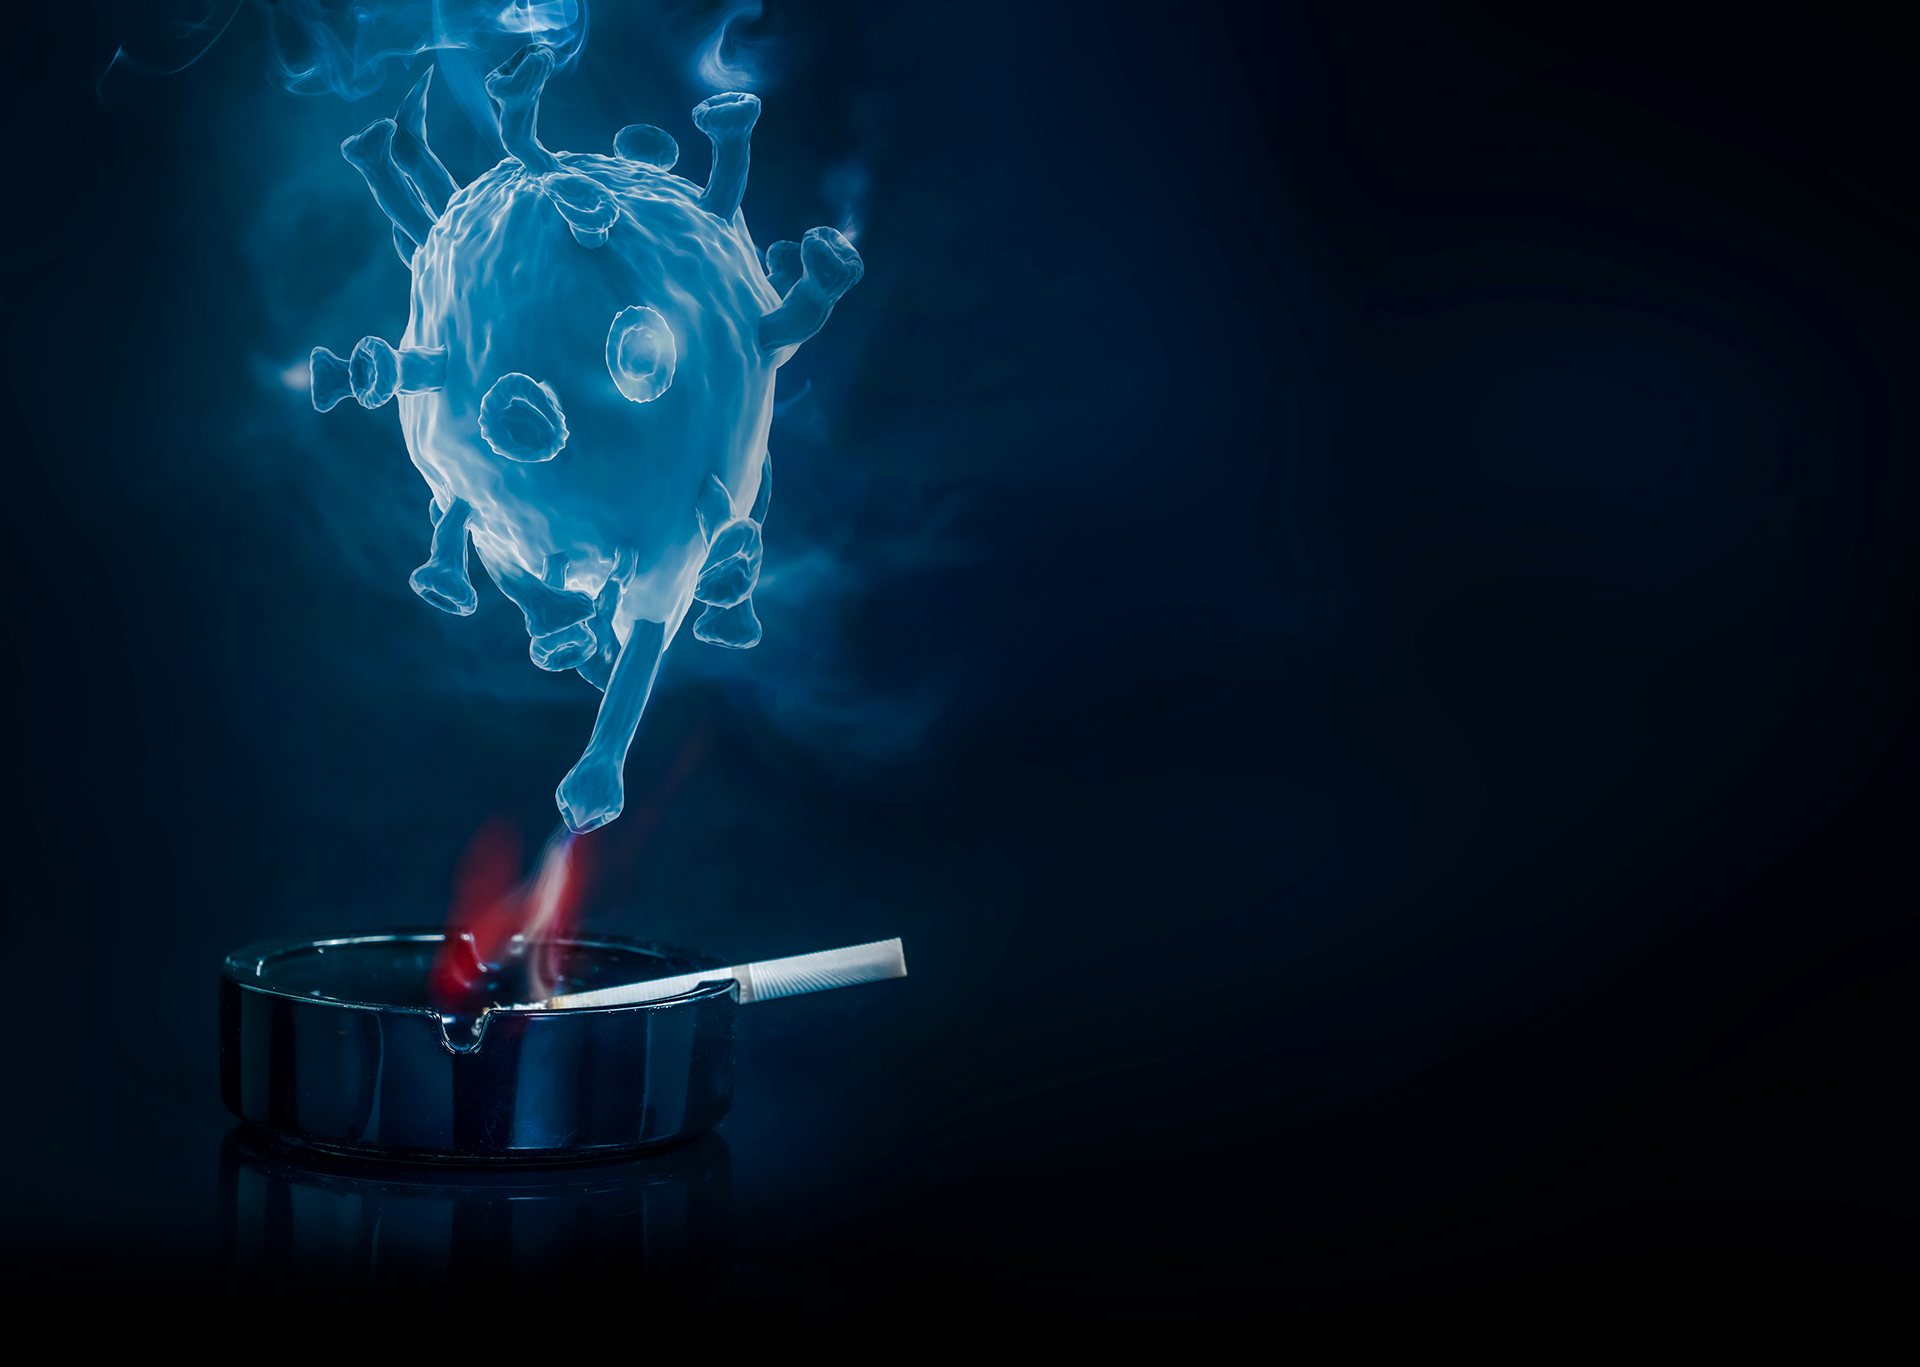 Los fumadores tienen casi dos veces más posibilidades de progresión grave de la enfermedad. (Shutterstock.com)